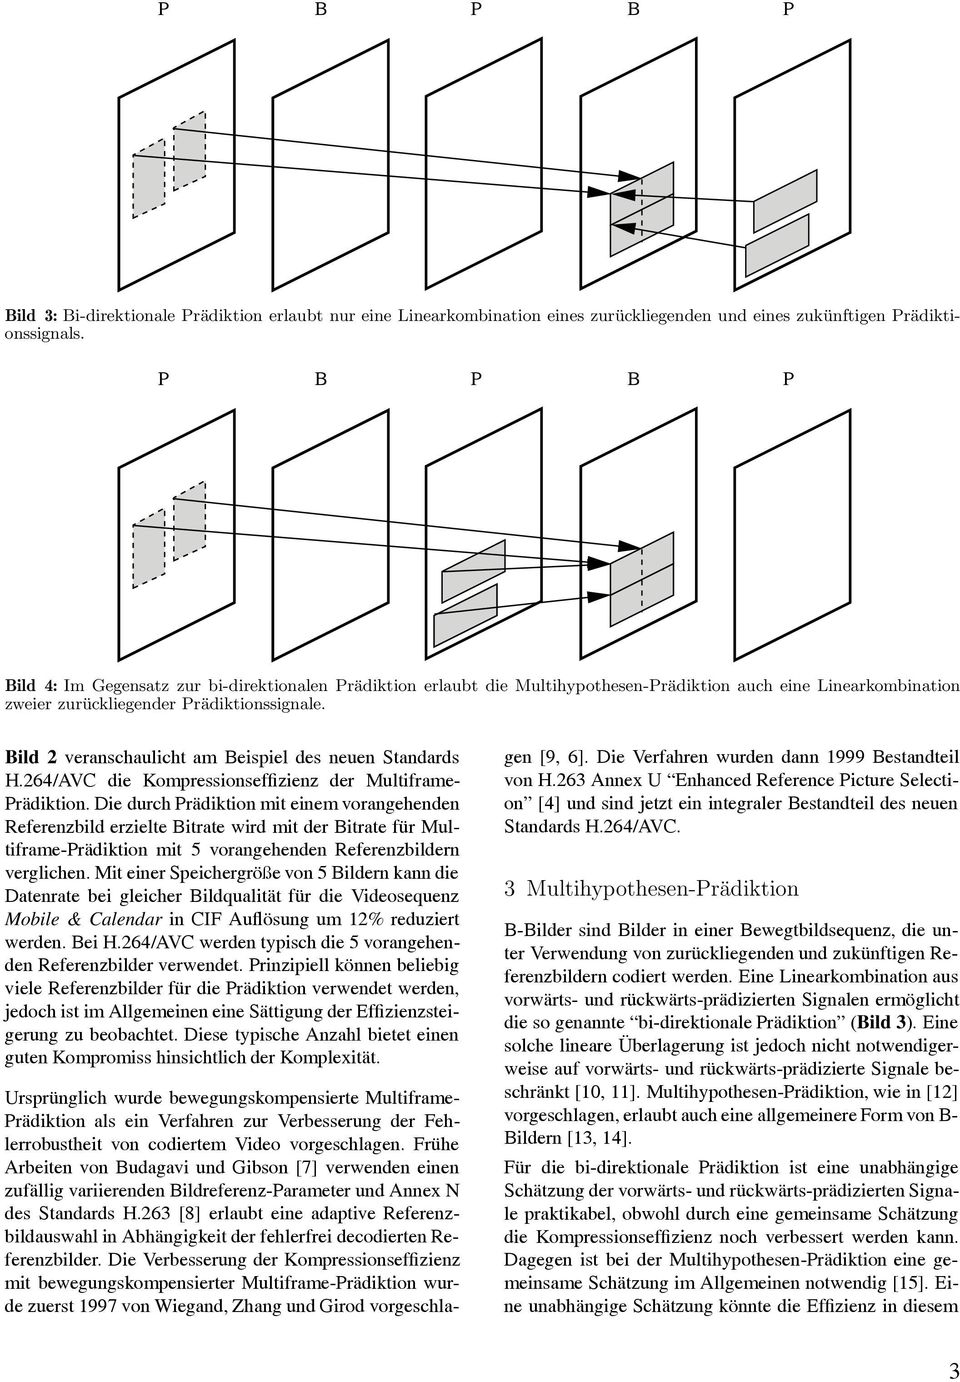 Bild 2 veranschaulicht am Beispiel des neuen Standards H.264/AVC die Kompressionseffizienz der Multiframe- Prädiktion.